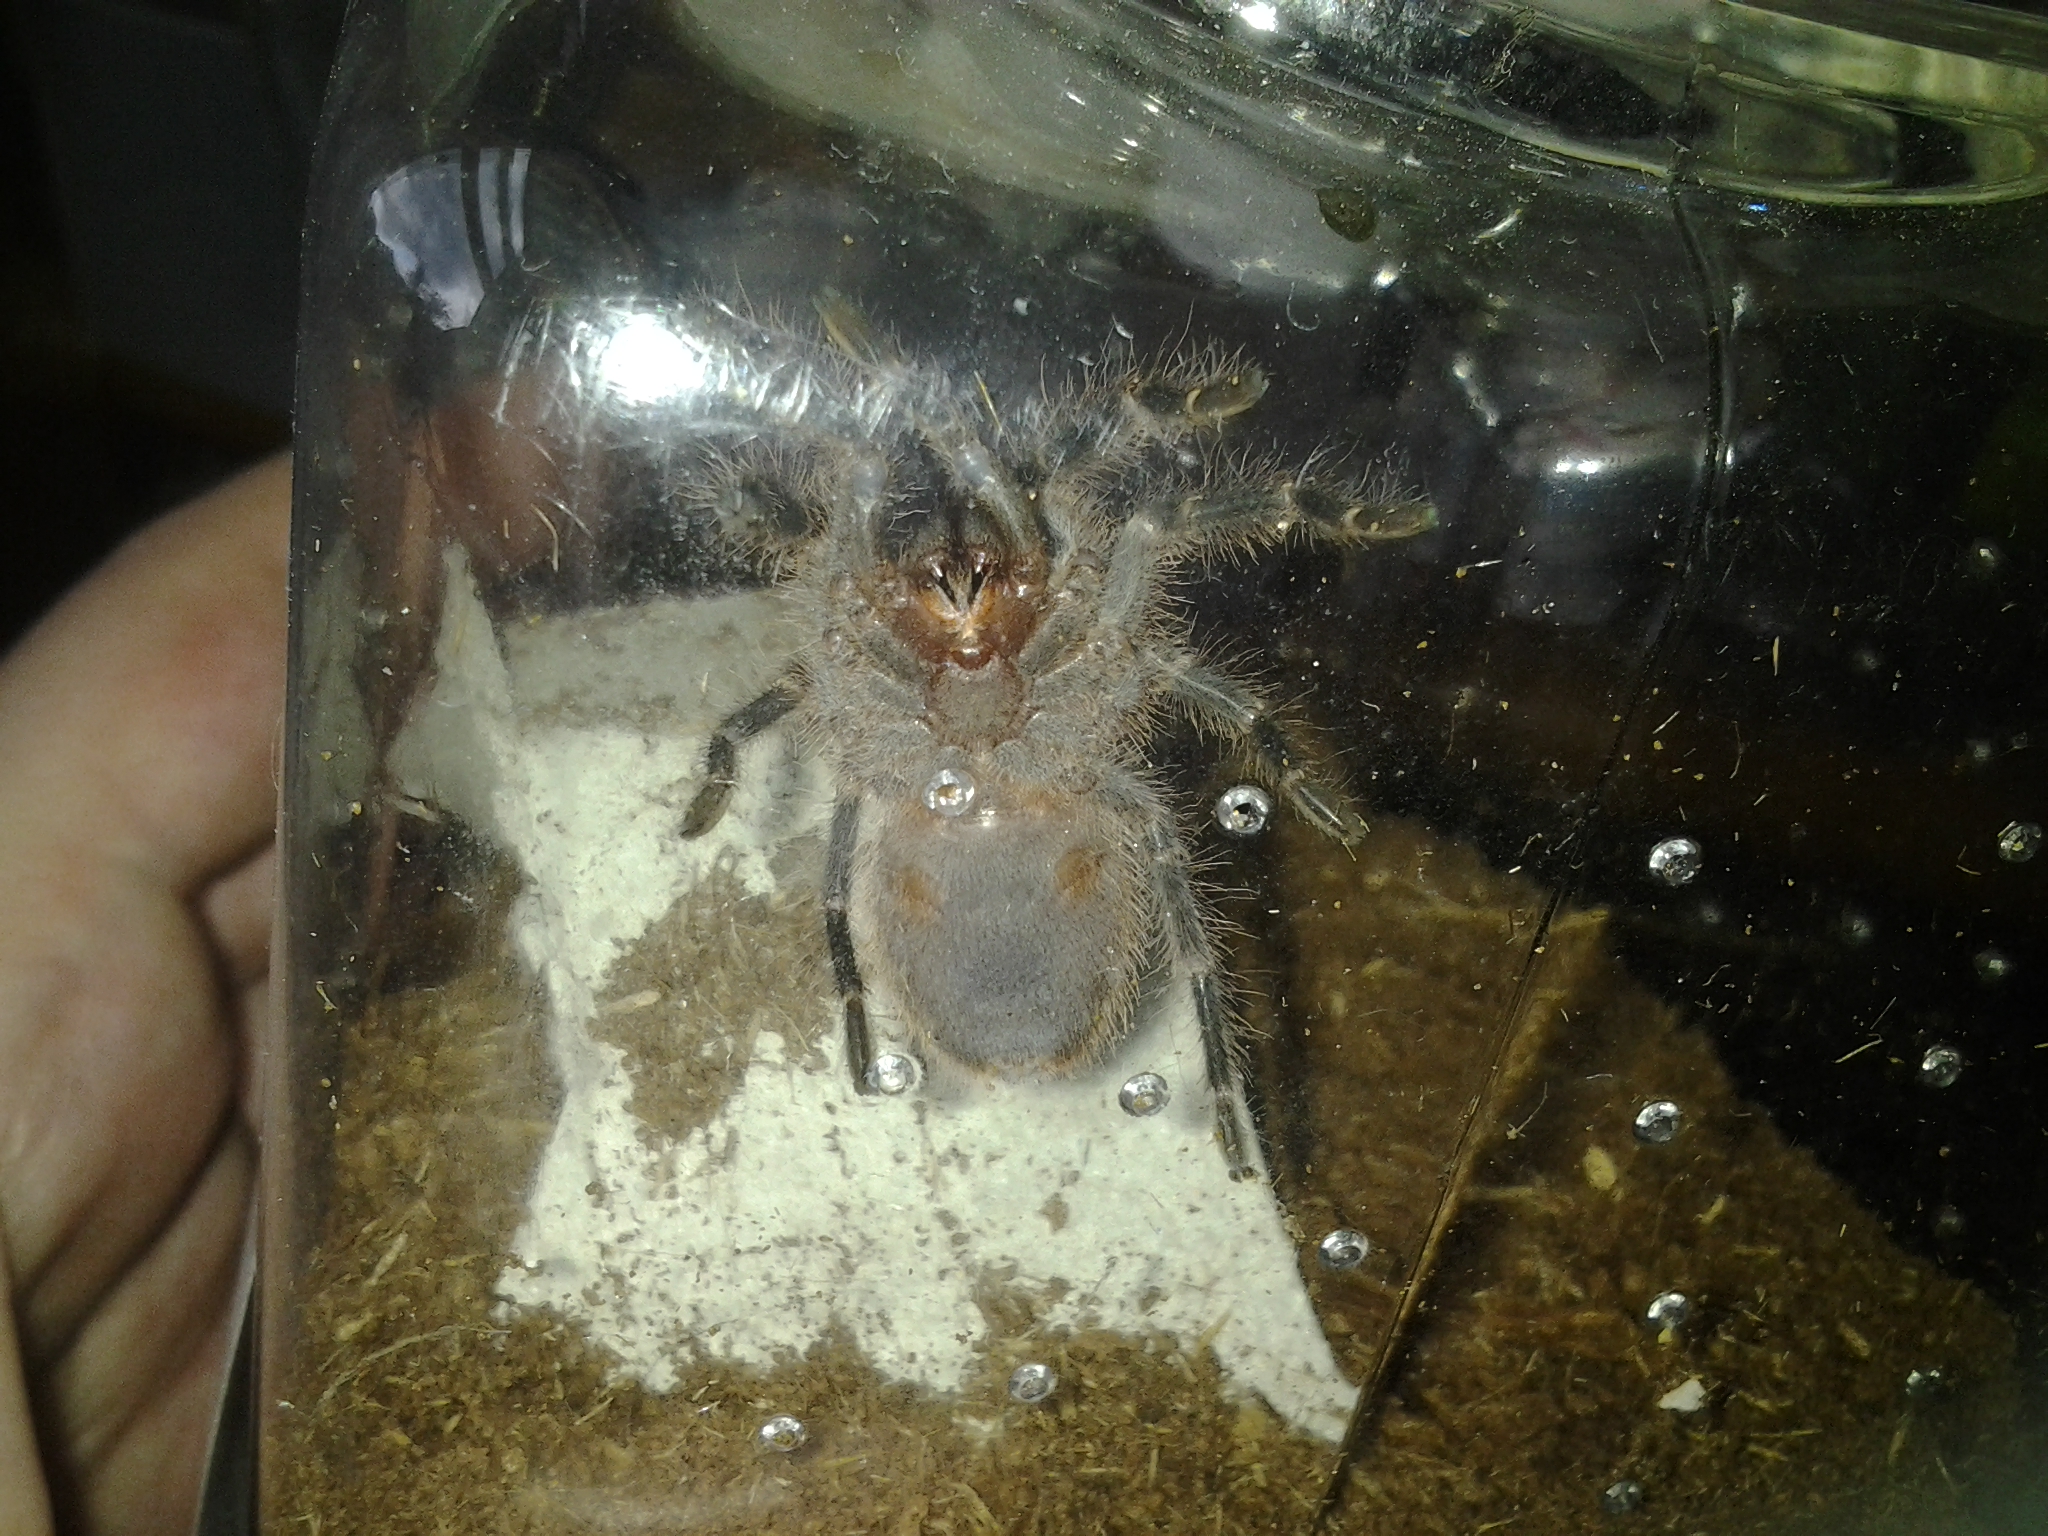 Swixter's Underside, Grammostola pulchripes spiderling